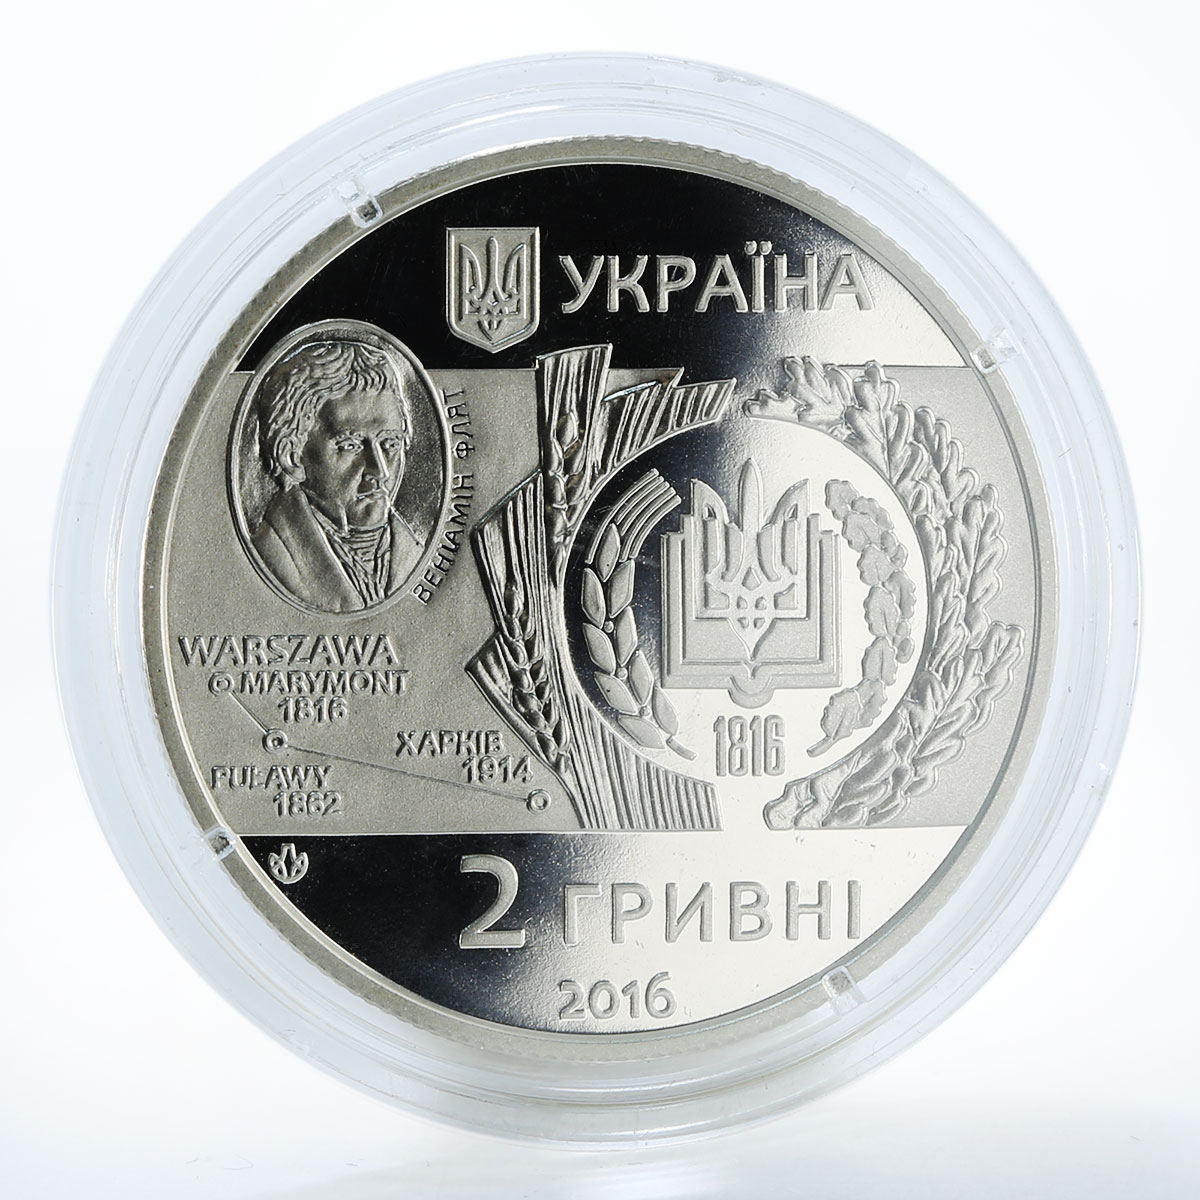 Ukraine 2 hryvnia V.Dokuchaev Agrarian University Kharkiv nickel coin 2016